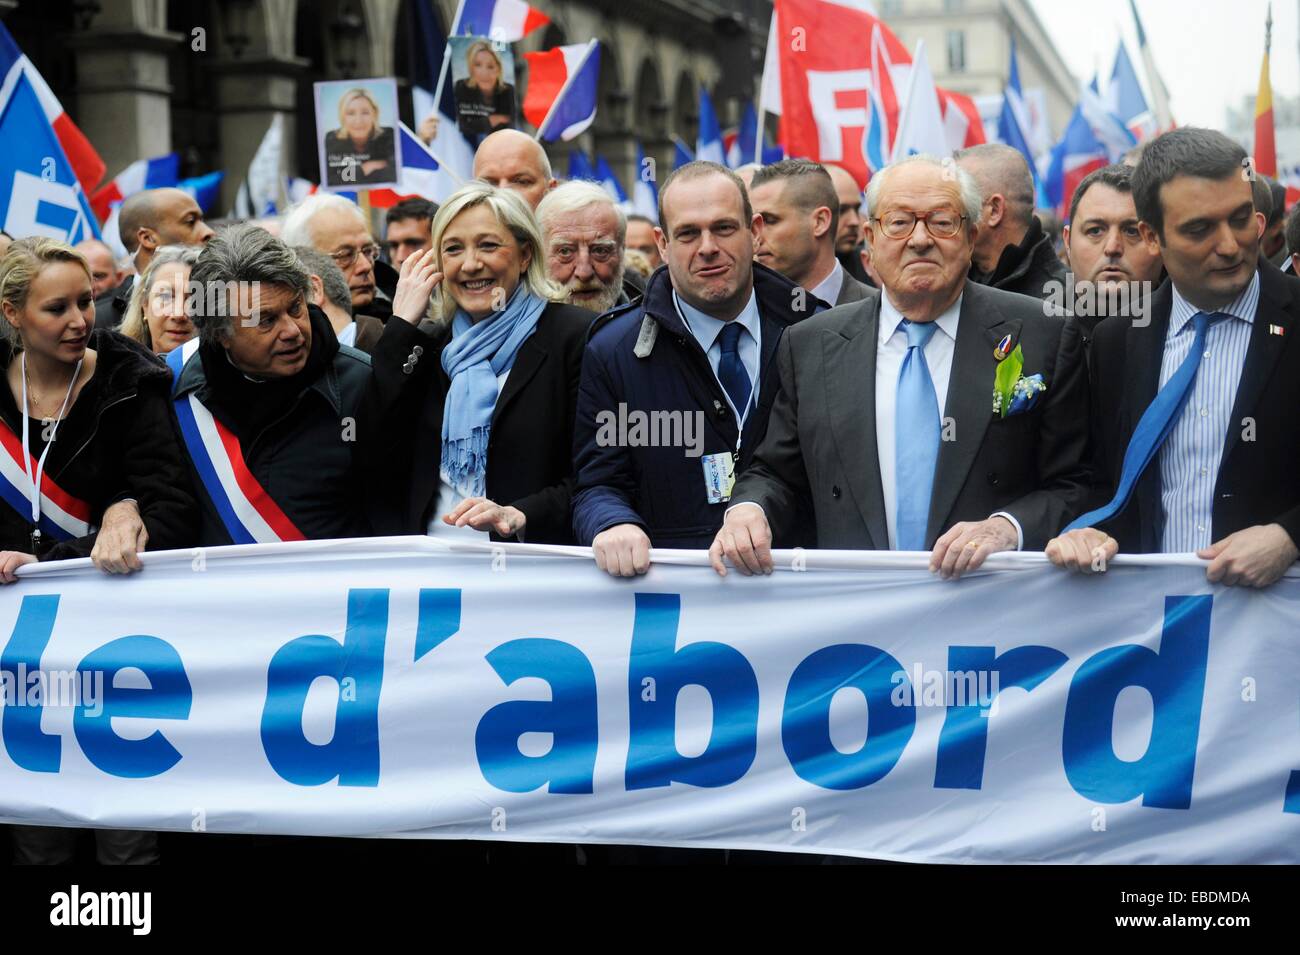 16-2011-2013-3. blau Collard Farbe Demonstration Europa weit rechts Bildpolitik Flagge fn Frankreich französische Front National Gilbert Stockfoto